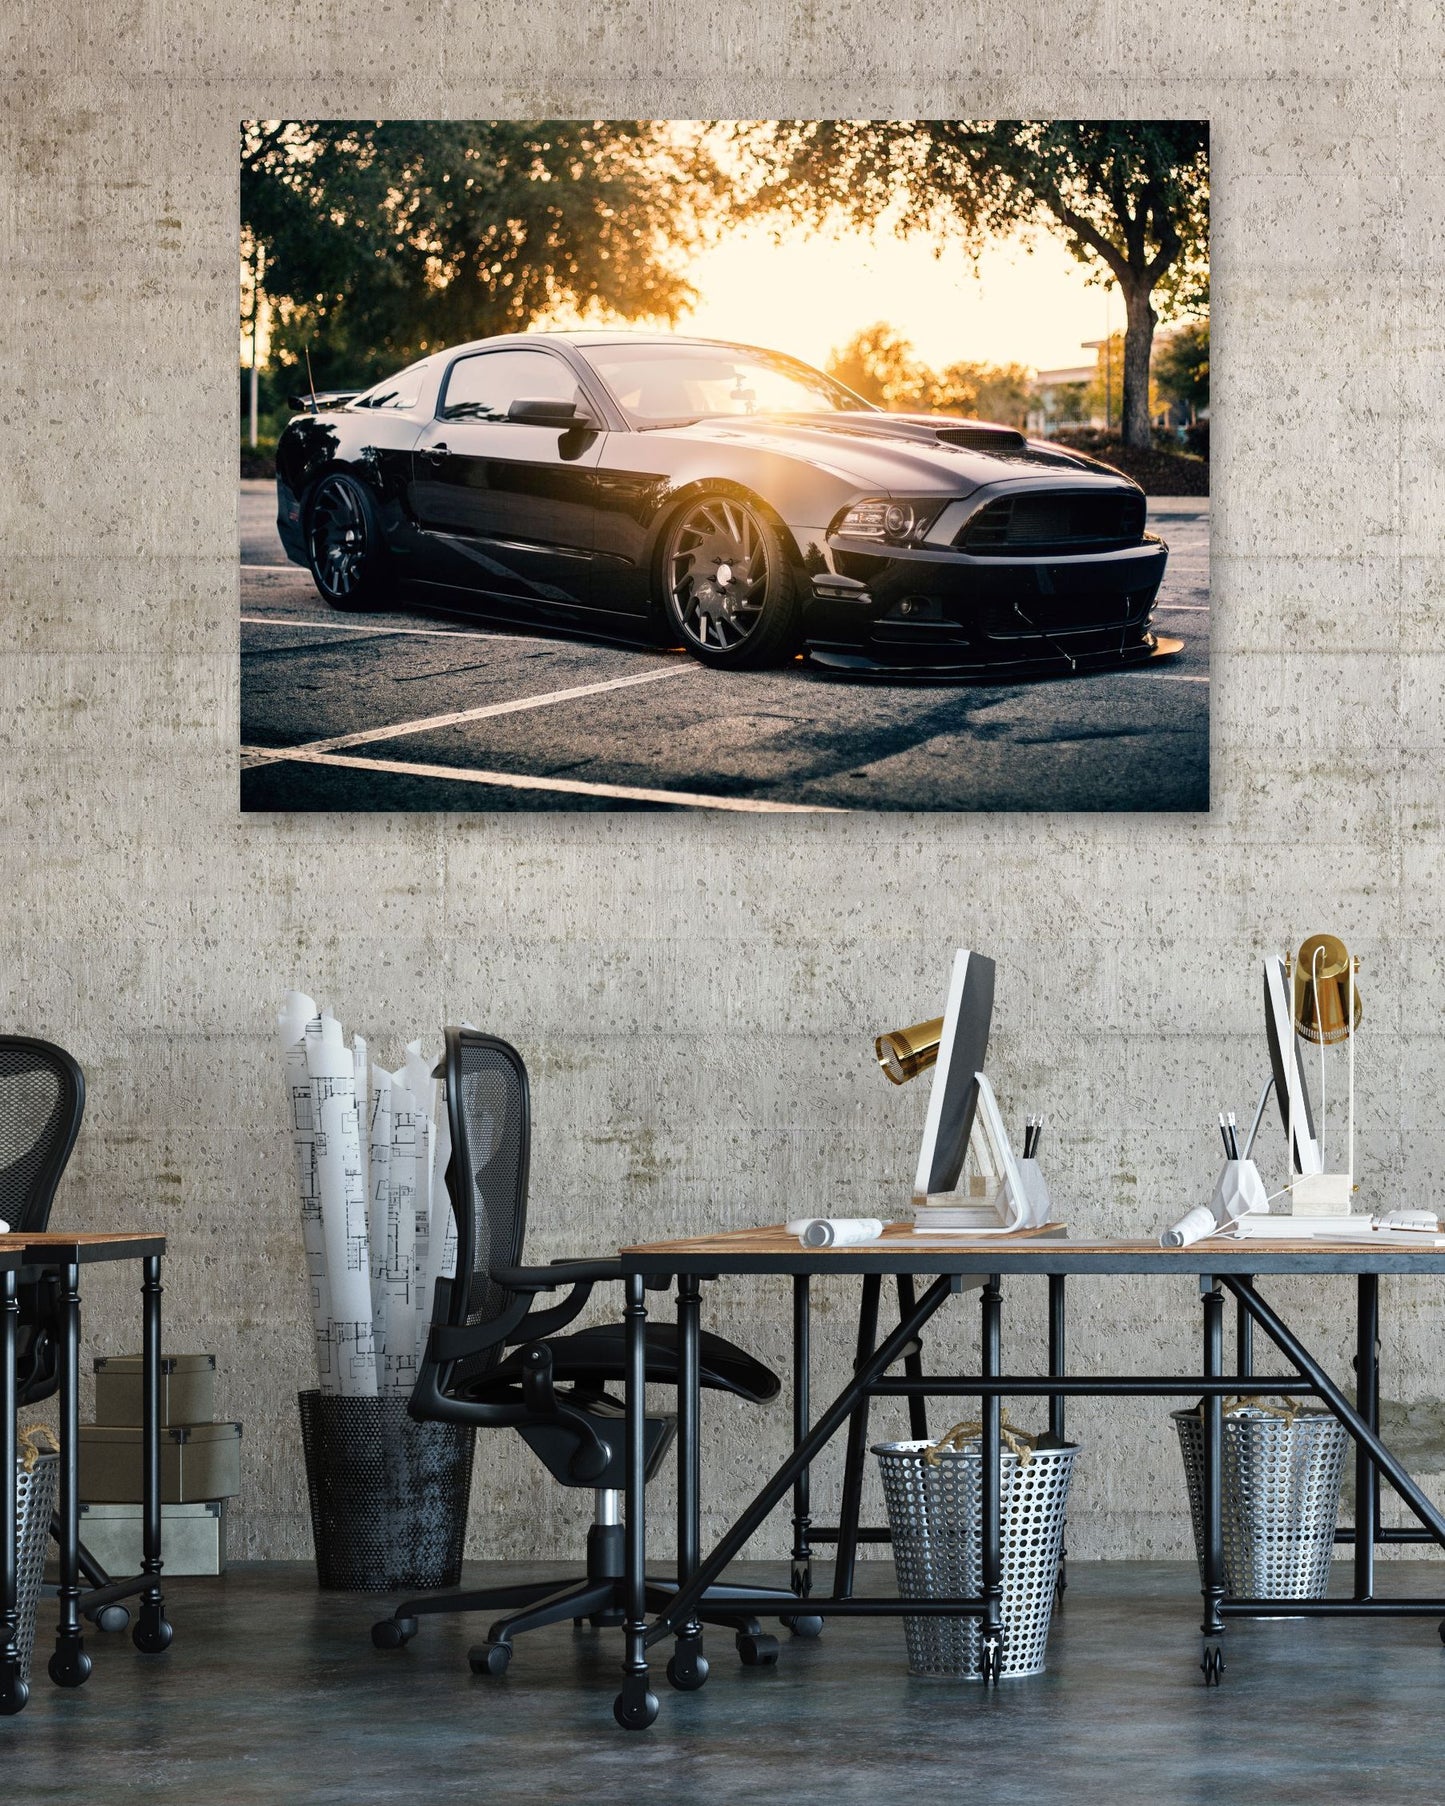 2013 Ford Mustang - @SpeedArt